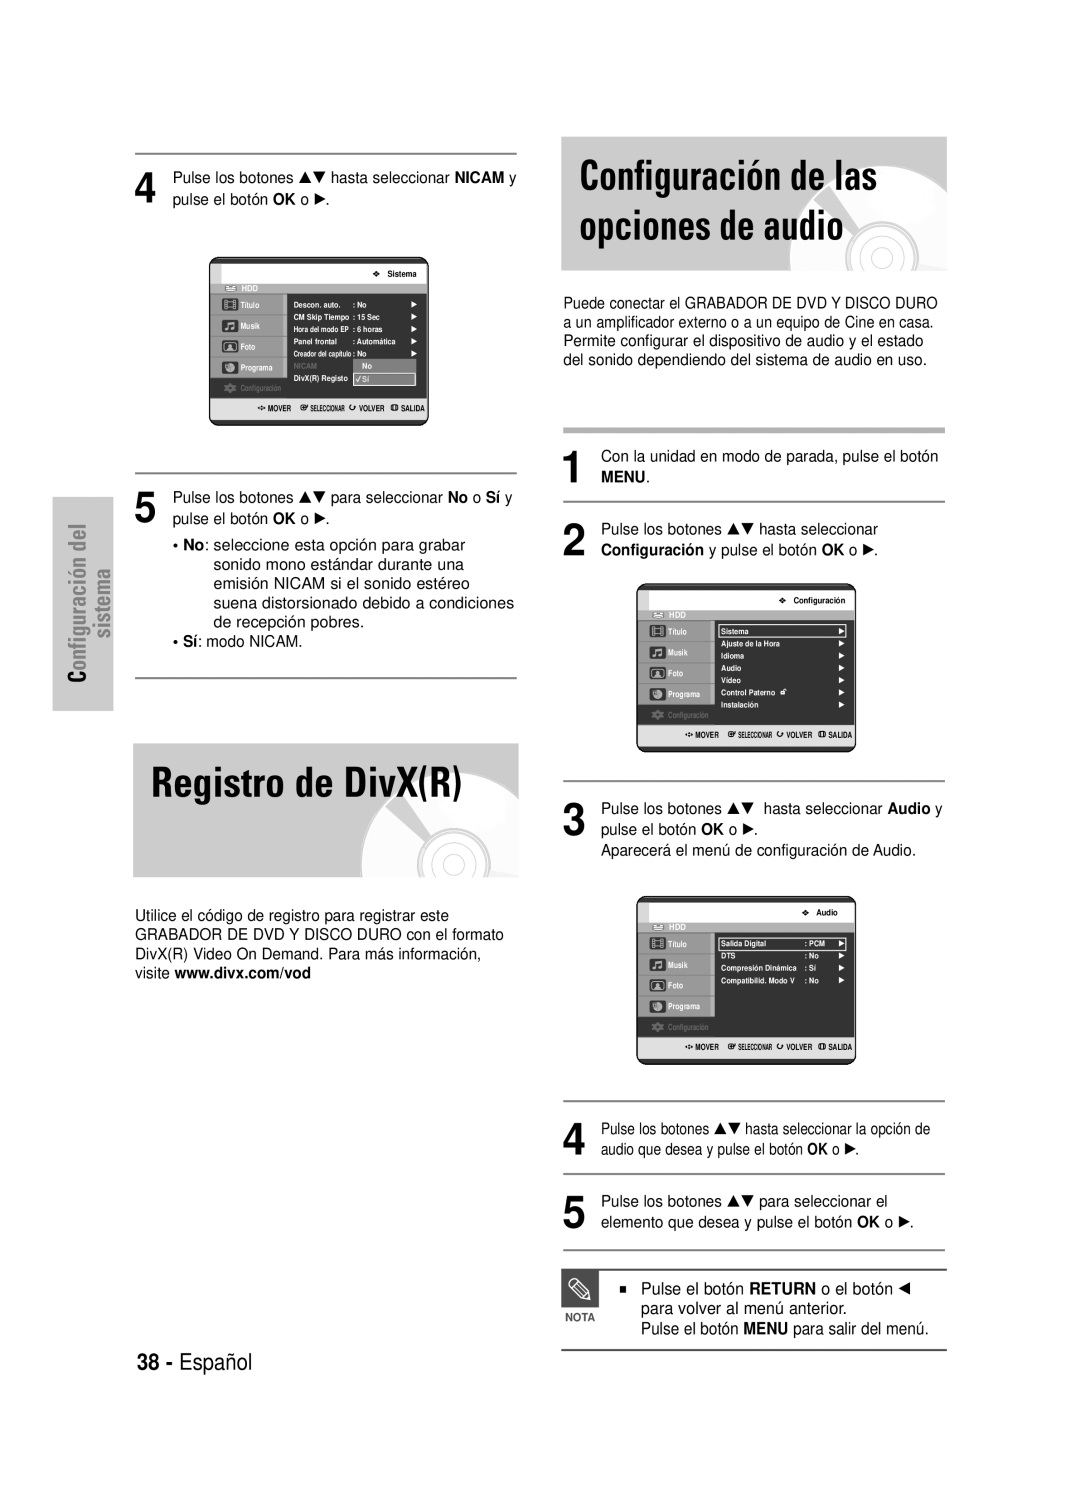 Samsung DVD-HR725/XET Registro de DivXR, Configuración de las opciones de audio, Español, Menu, pulse el botón OK o √ 